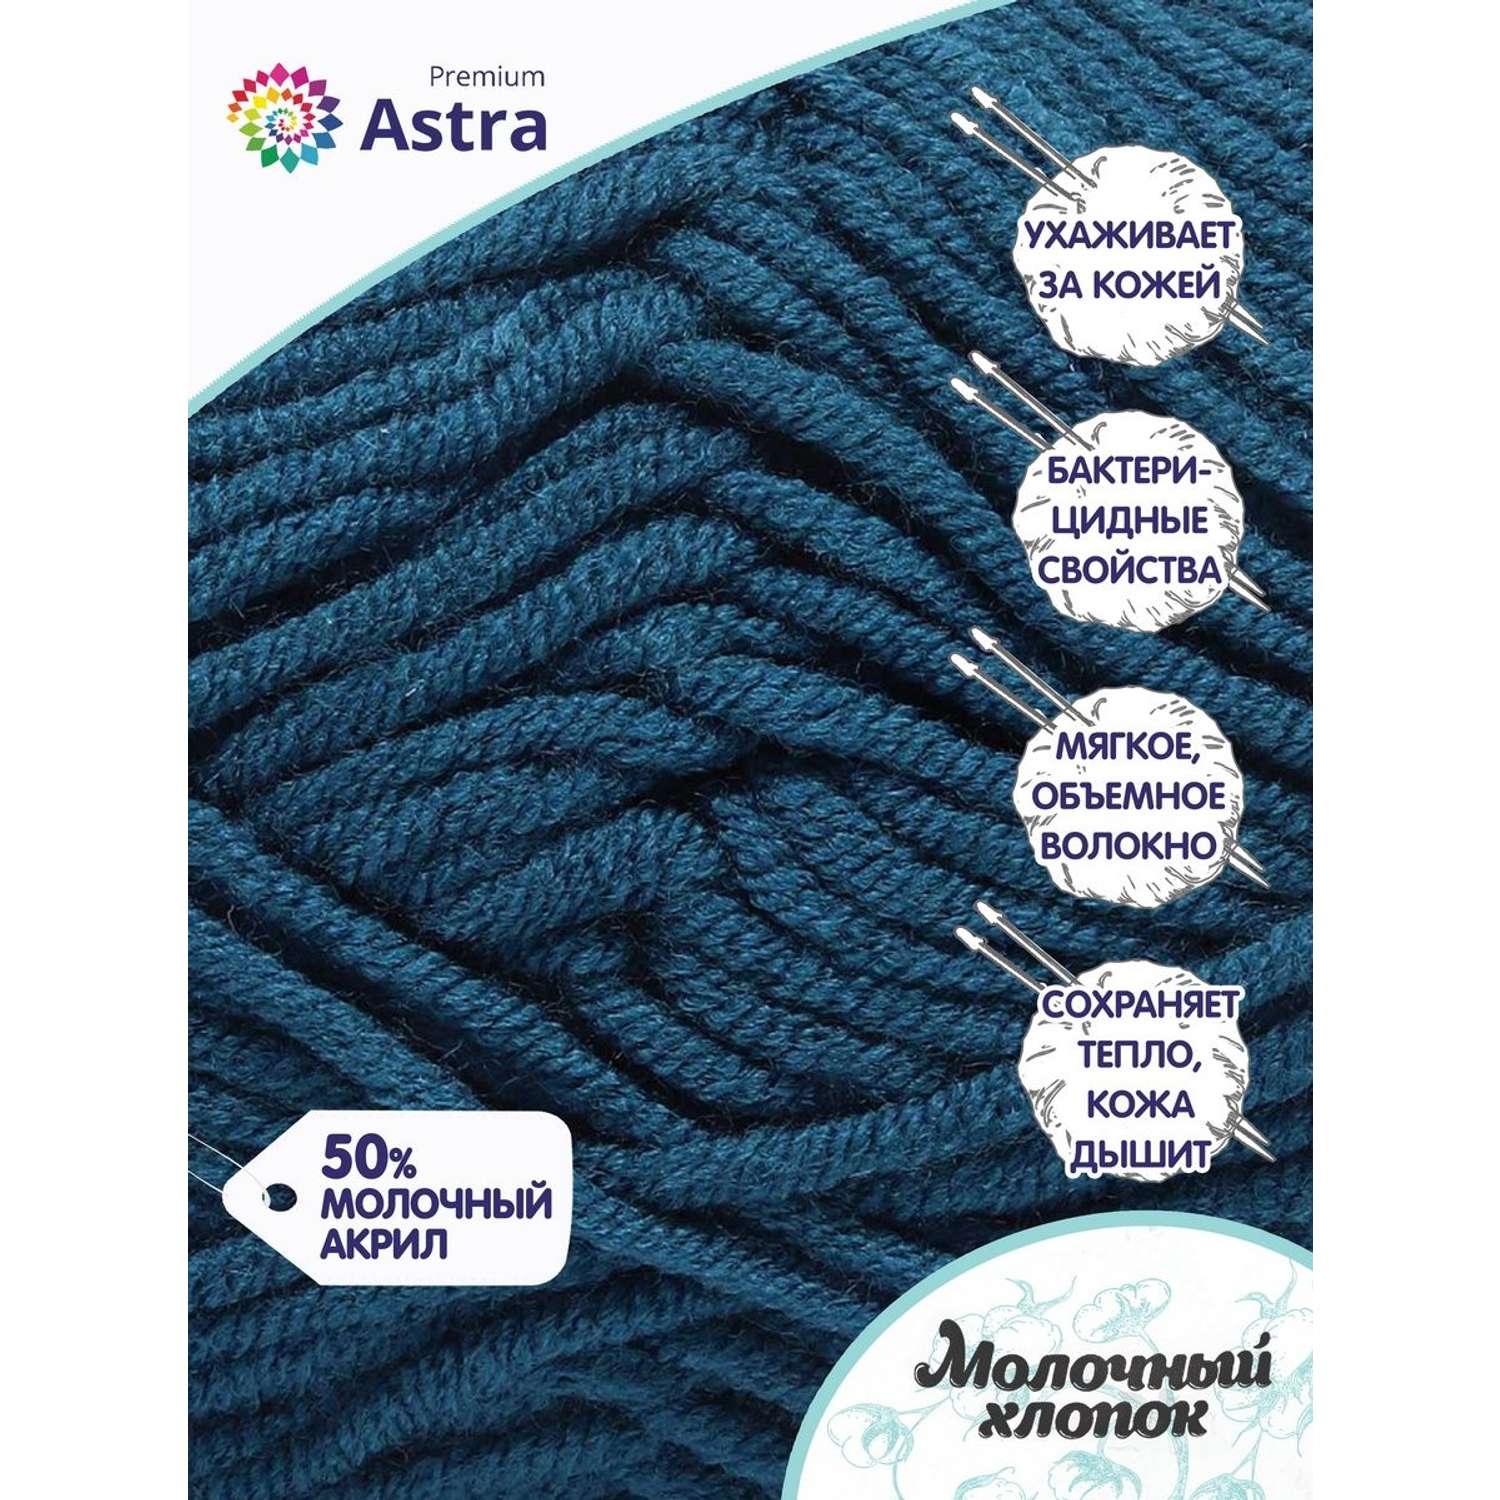 Пряжа для вязания Astra Premium milk cotton хлопок акрил 50 гр 100 м 60 синий джинсовый 3 мотка - фото 2